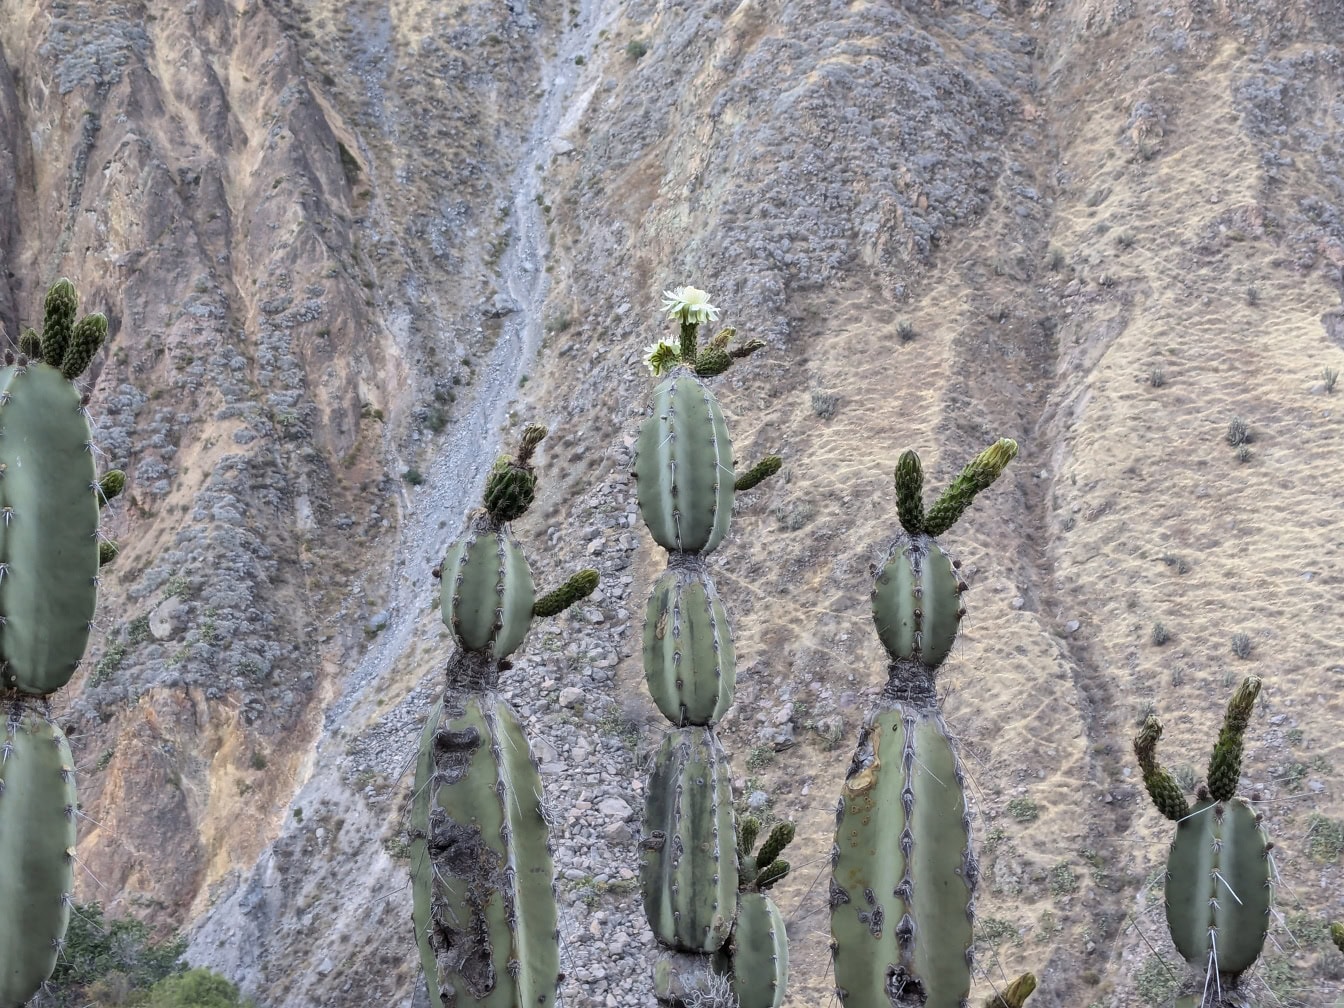 En kaktus med en vit blomma, en ört som kallas mandacaru eller cardeiro (Cereus jamacaru)